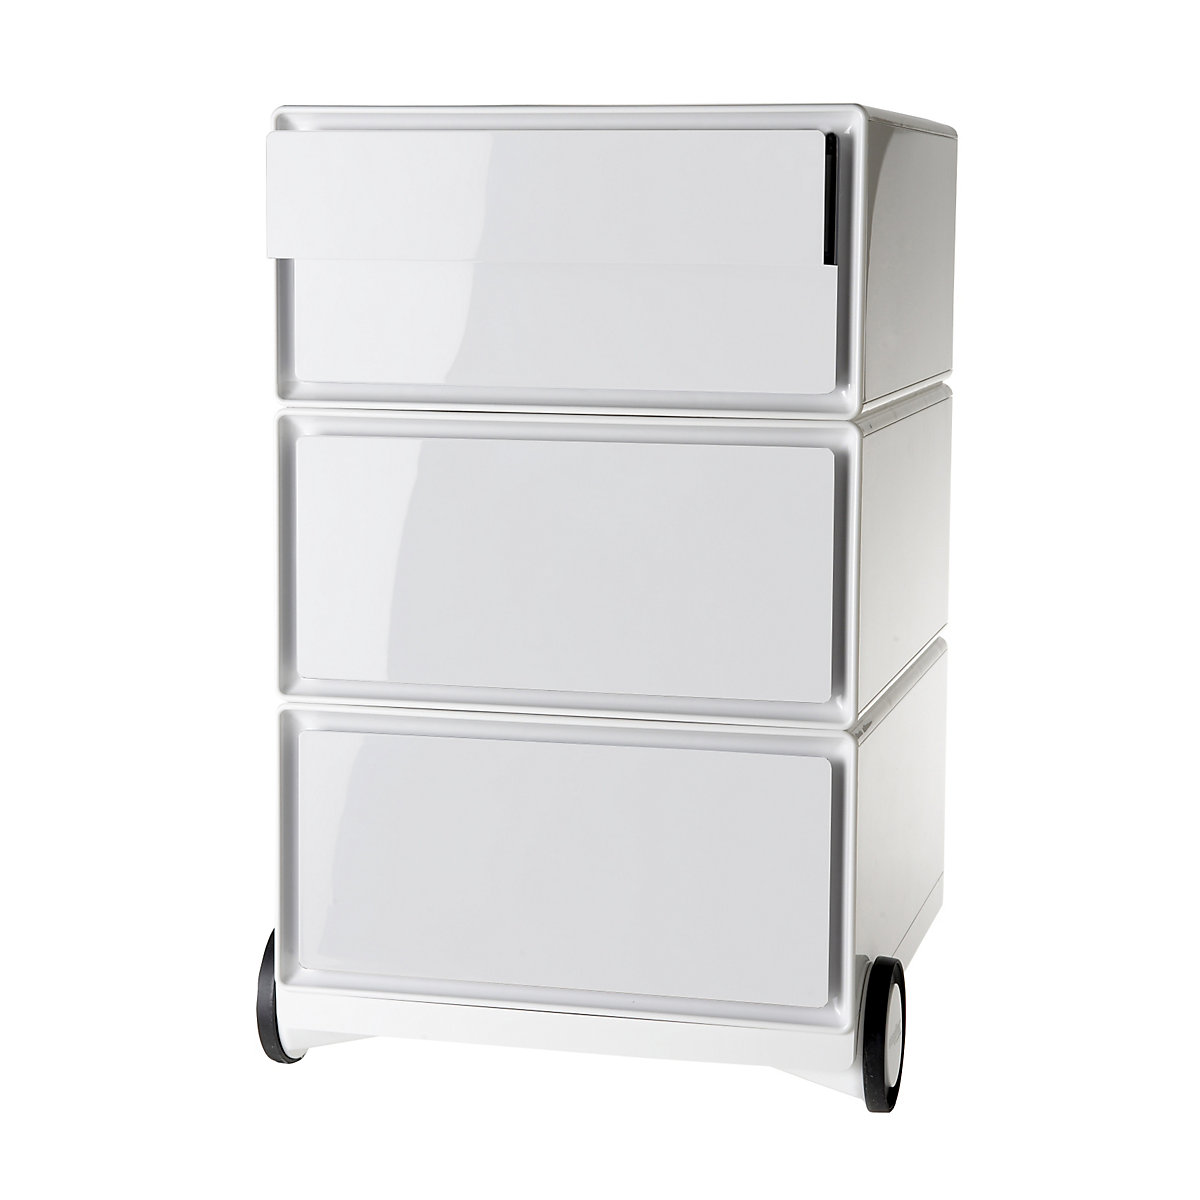 easyBox® görgős konténer – Paperflow, 2 fiók, 2 lapos fiók, fehér / fehér-7